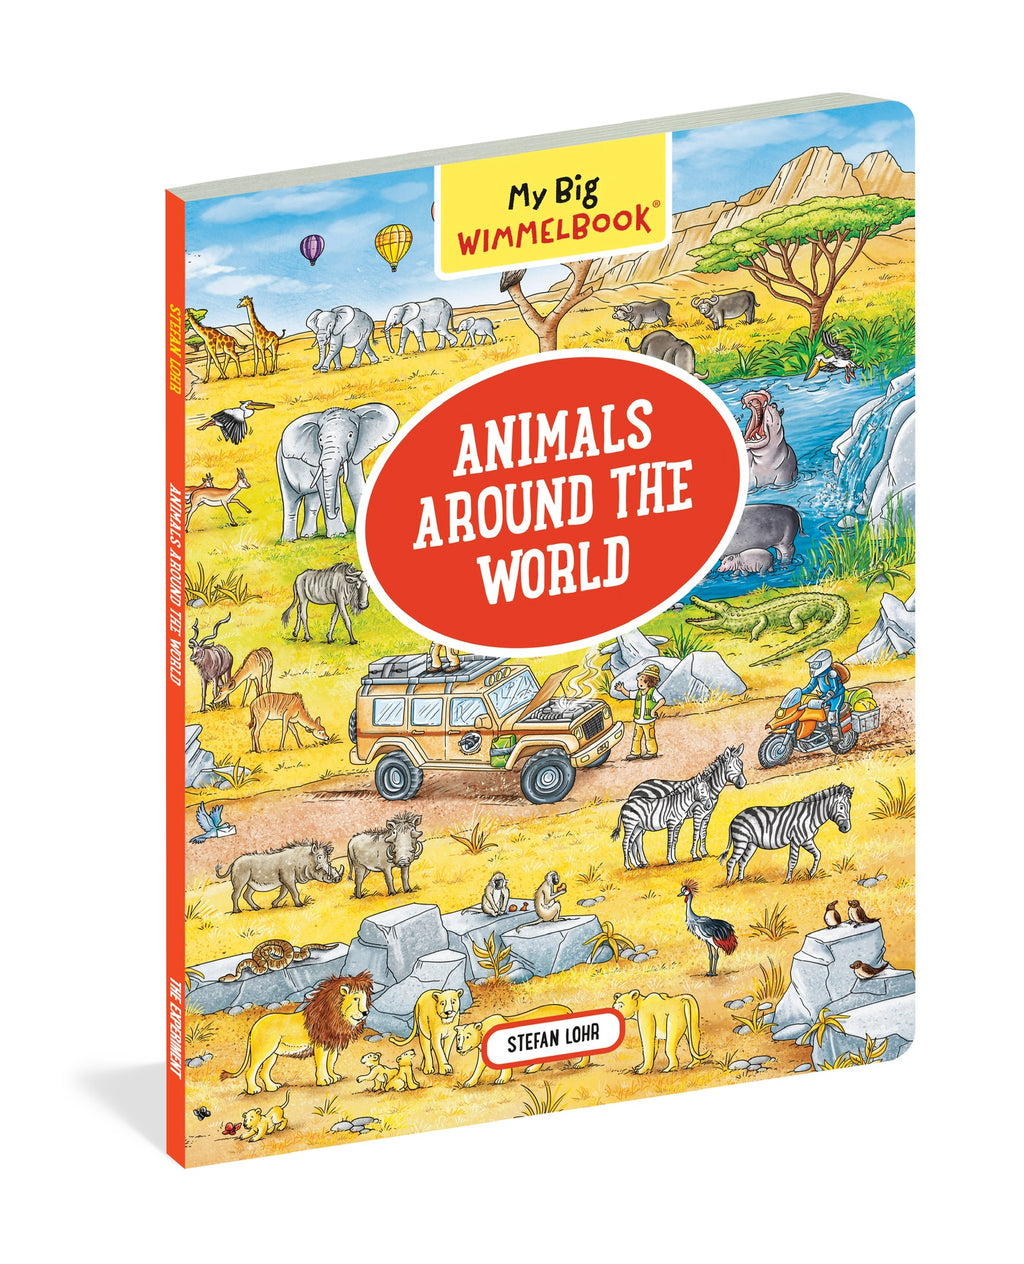 My Big Wimmelbook- Animals Around the World